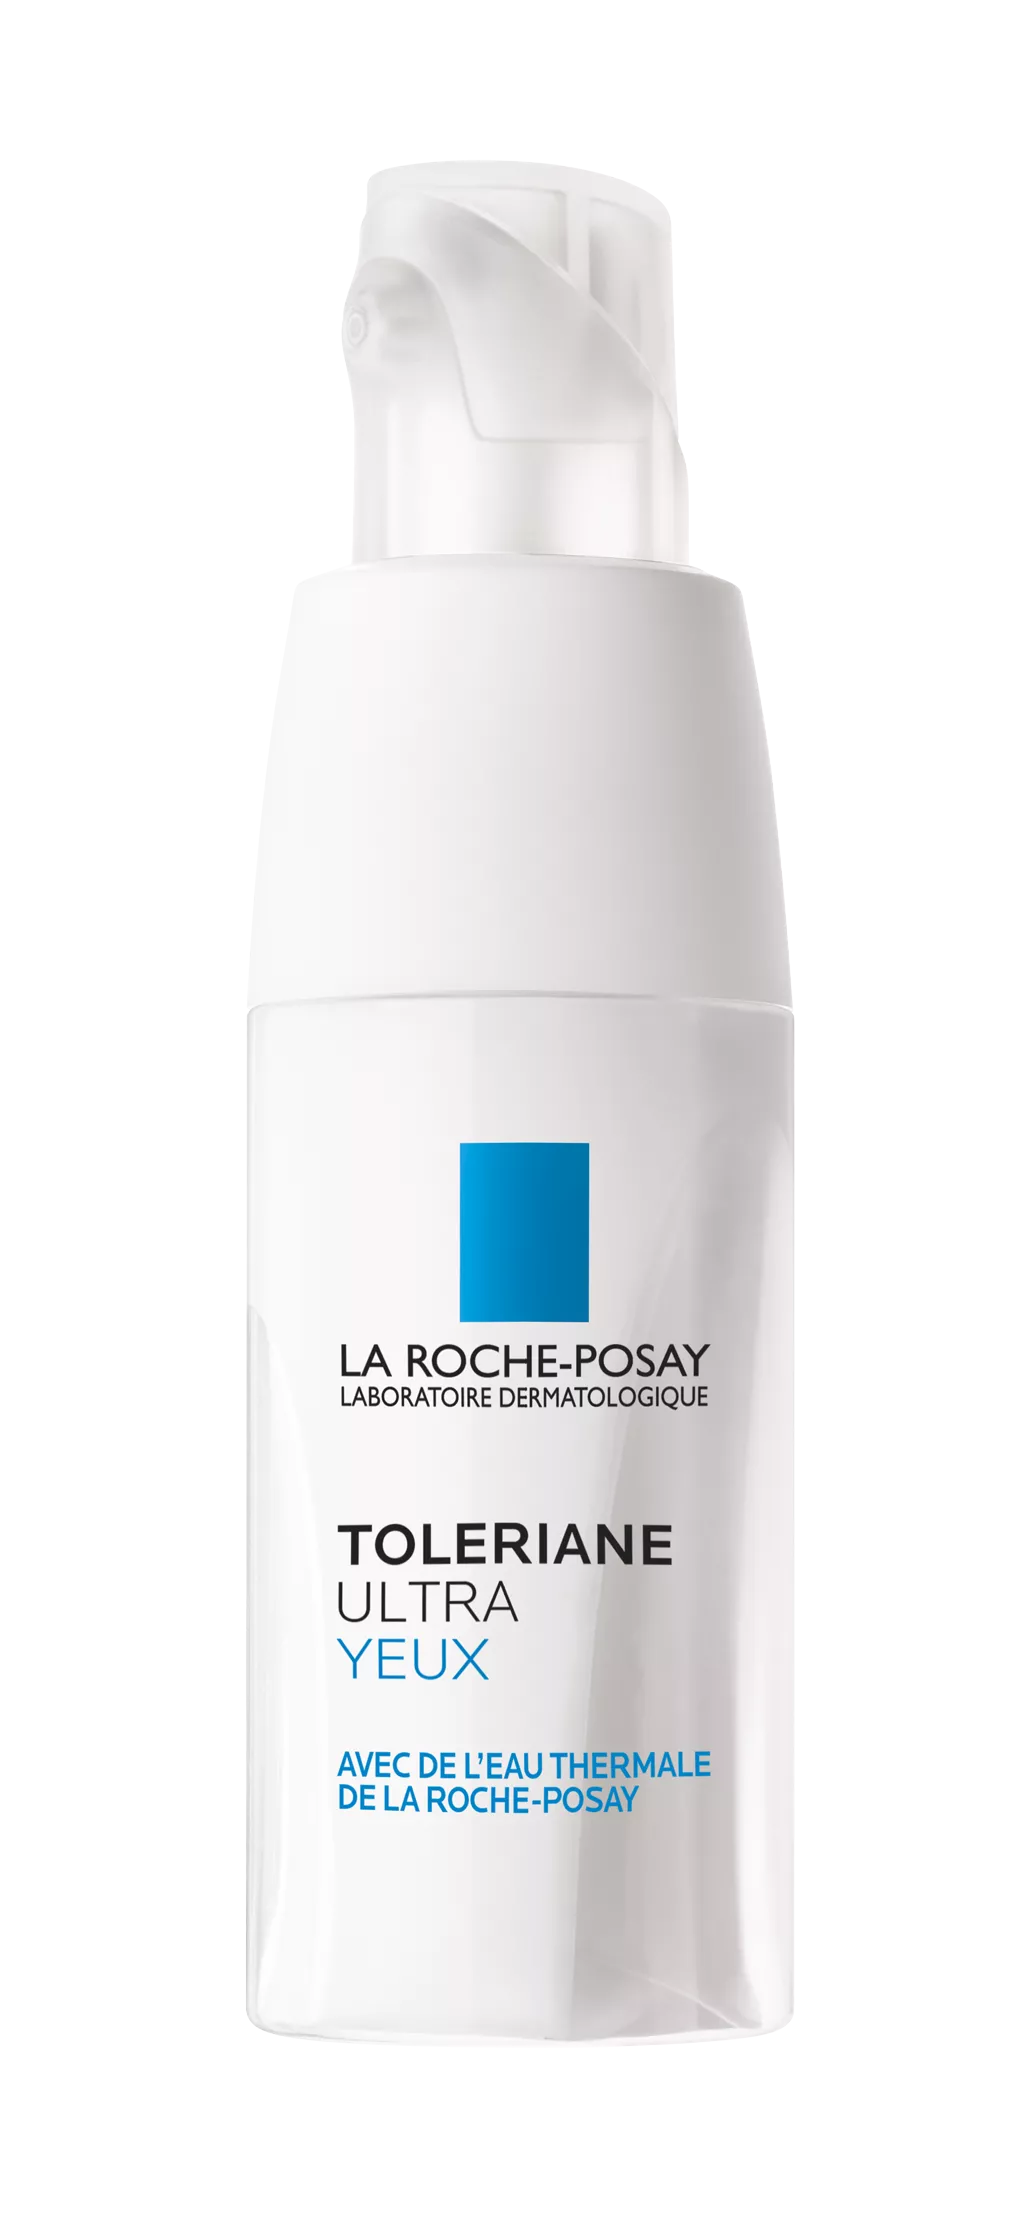 La Roche-Posay Toleriane Ultra Contur ochi x 20ml, [],remediumfarm.ro